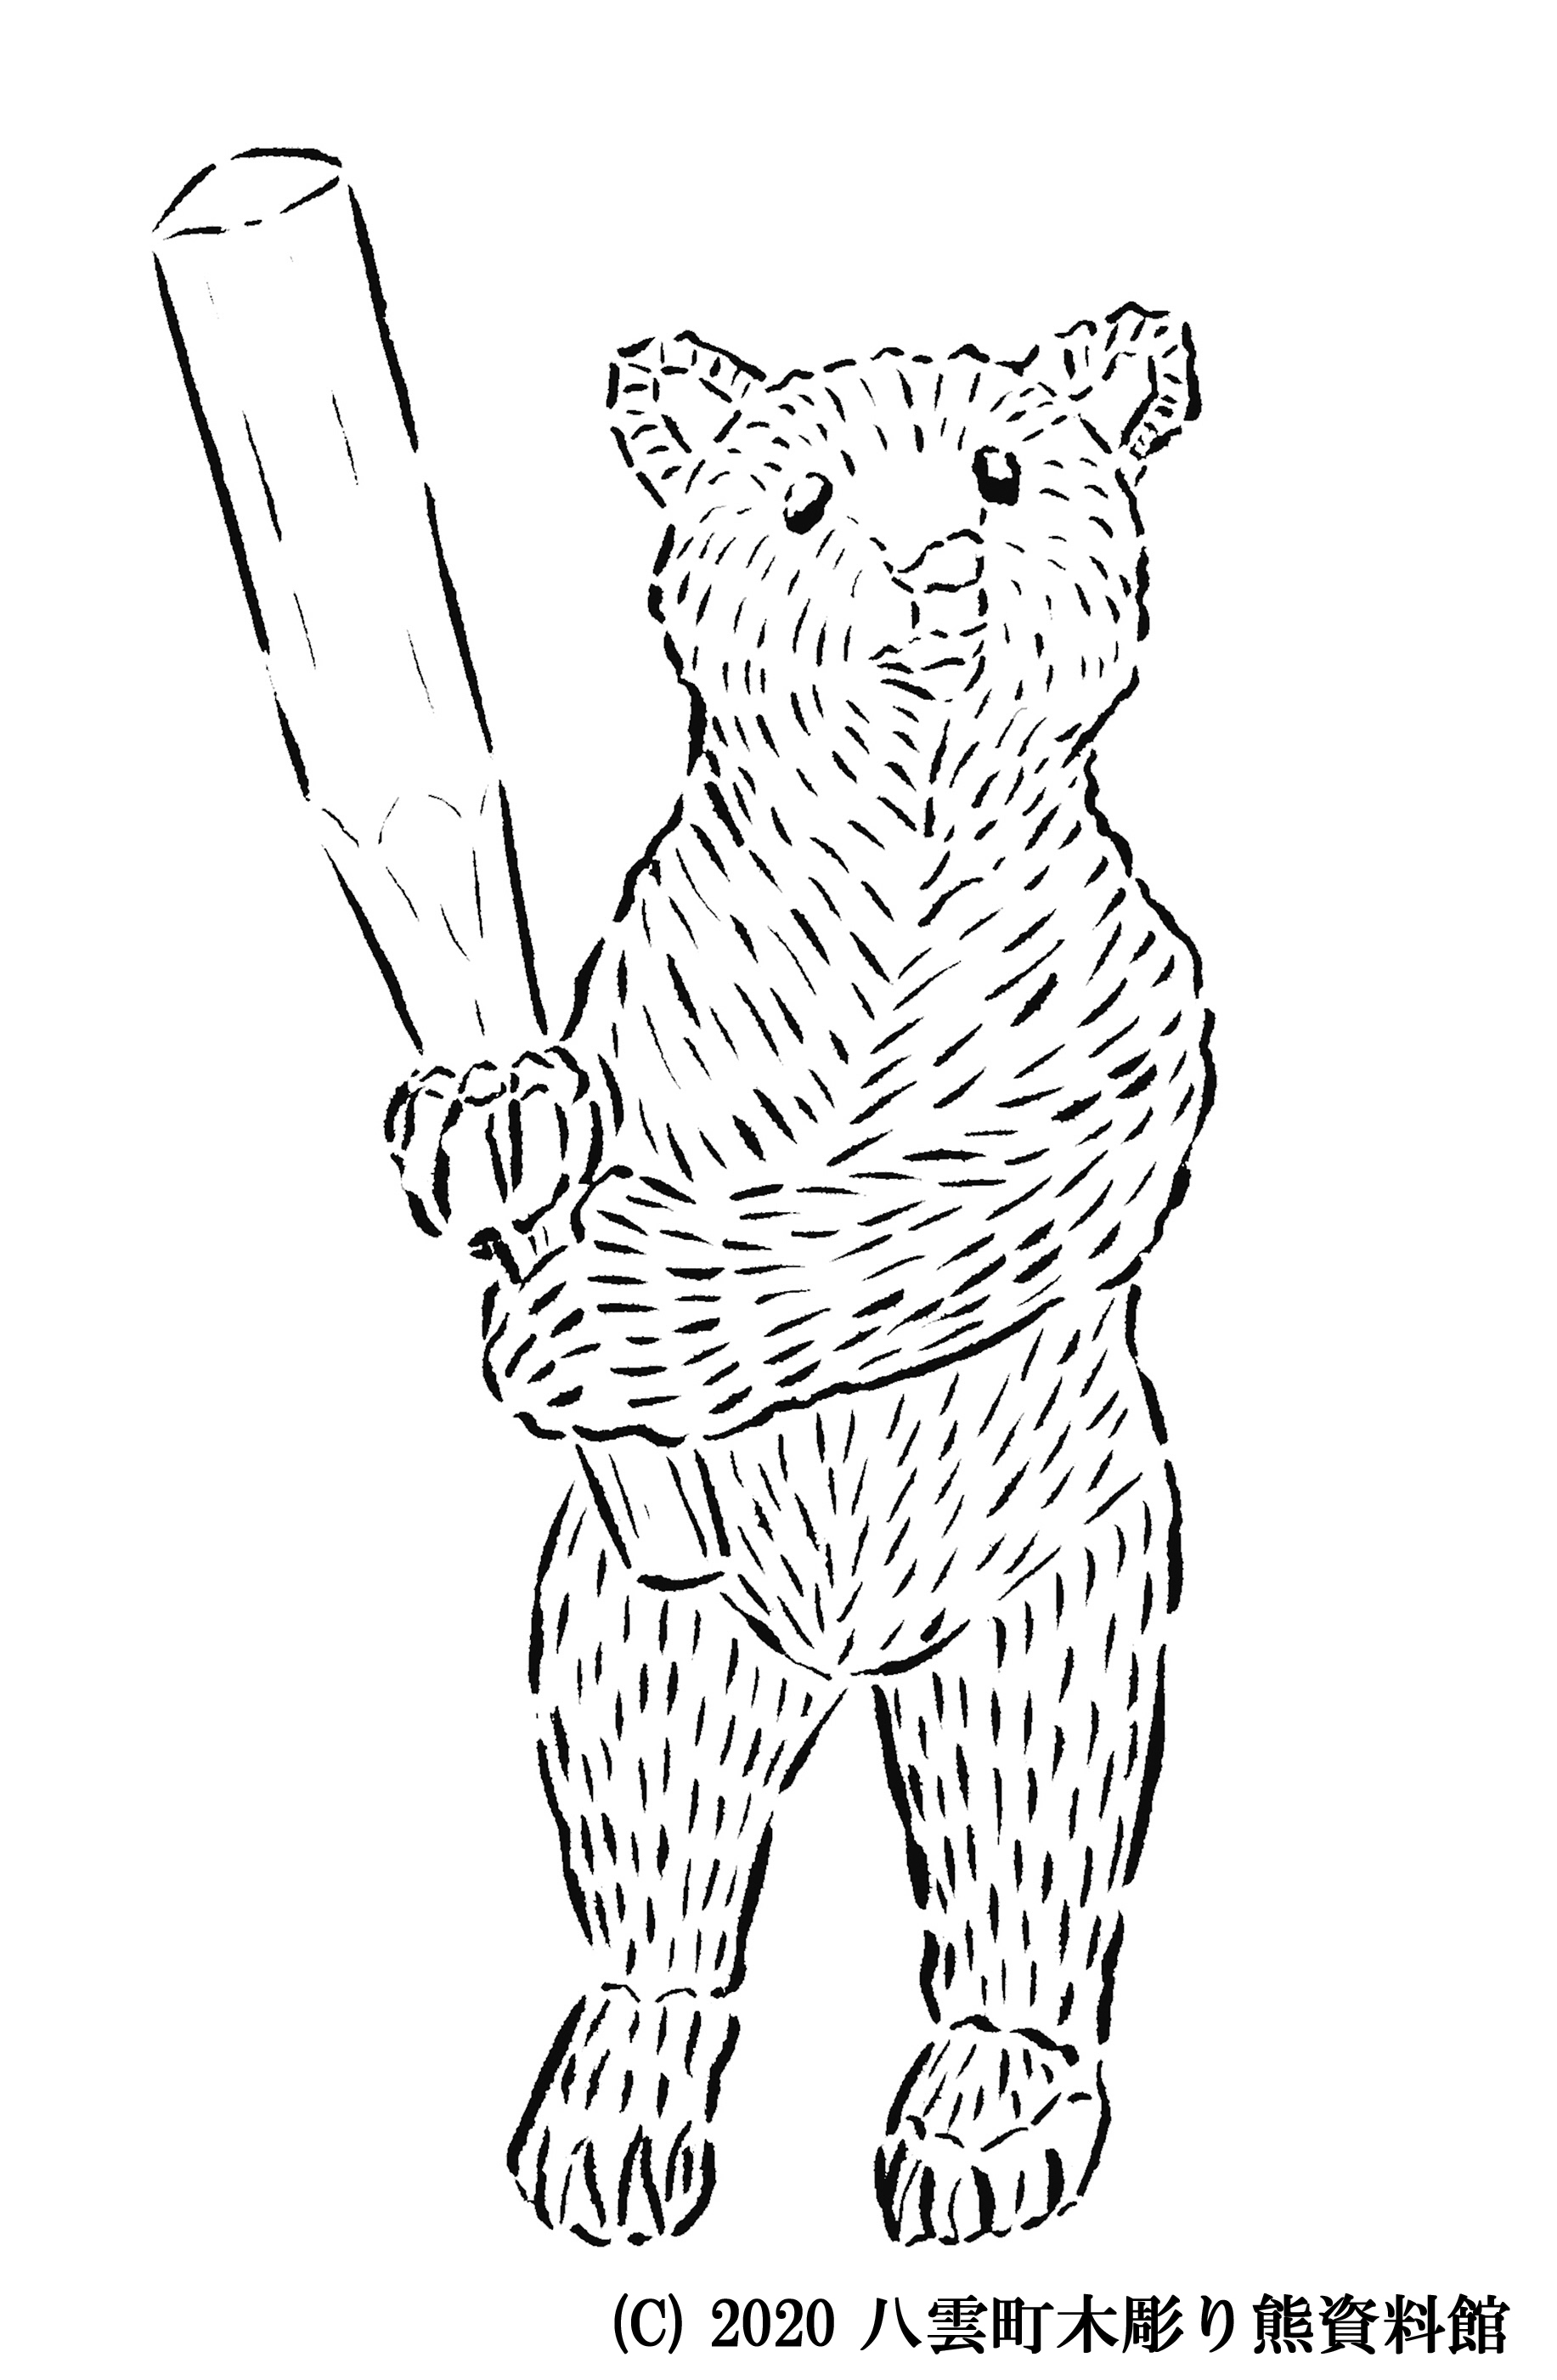 木彫り熊イラストの塗り絵をしてみよう 八雲町ホームページ